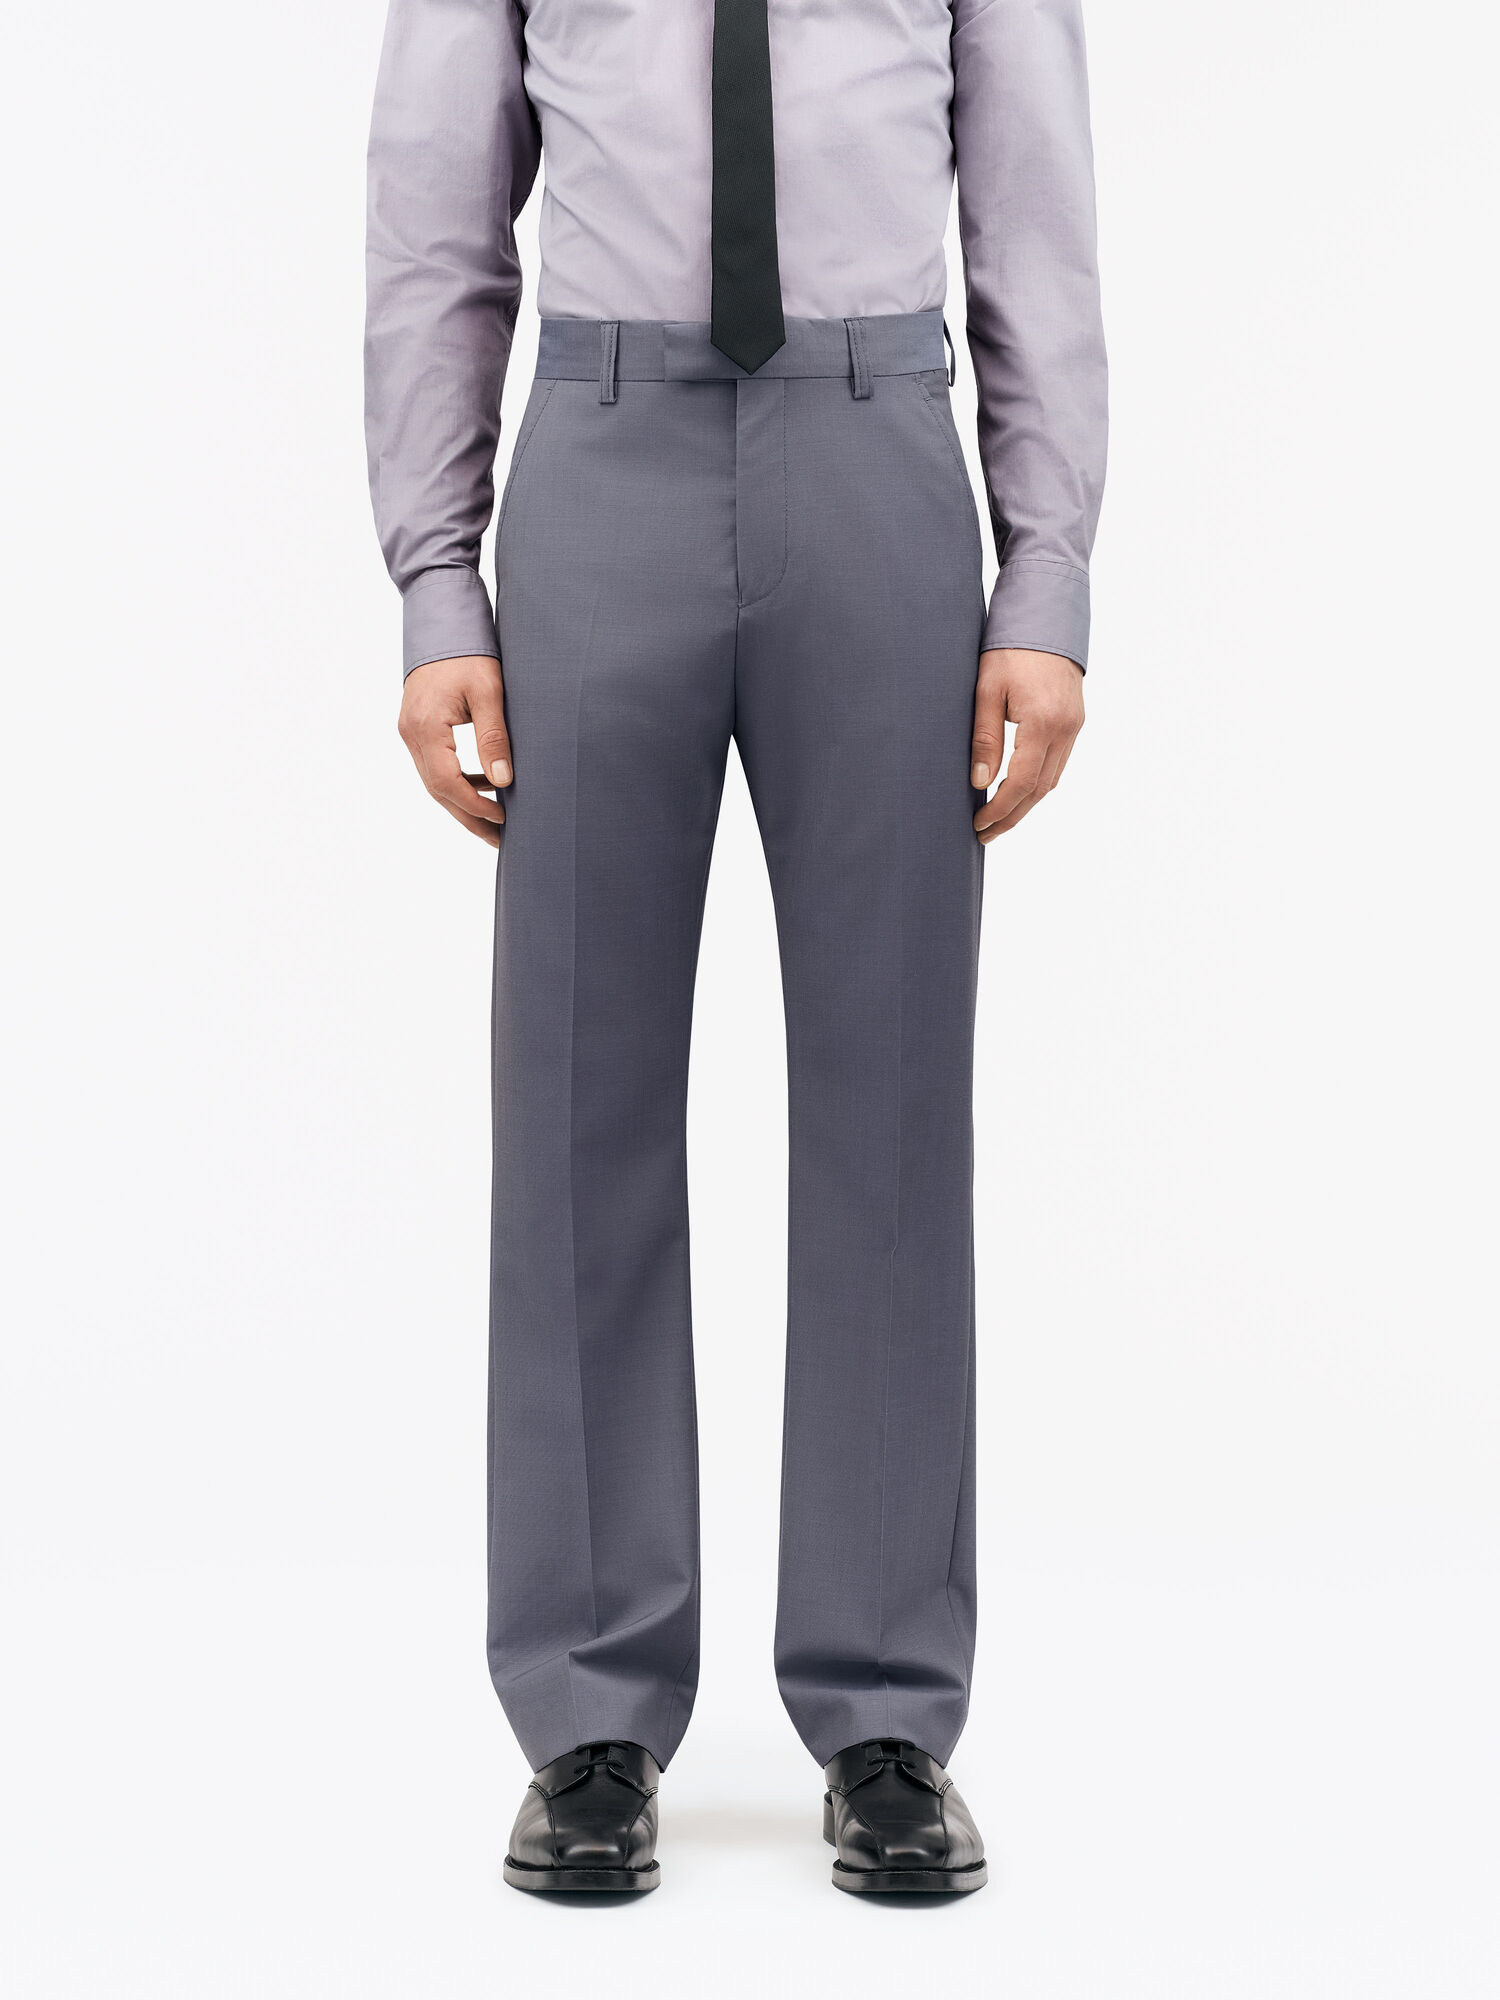 Jazon Suit